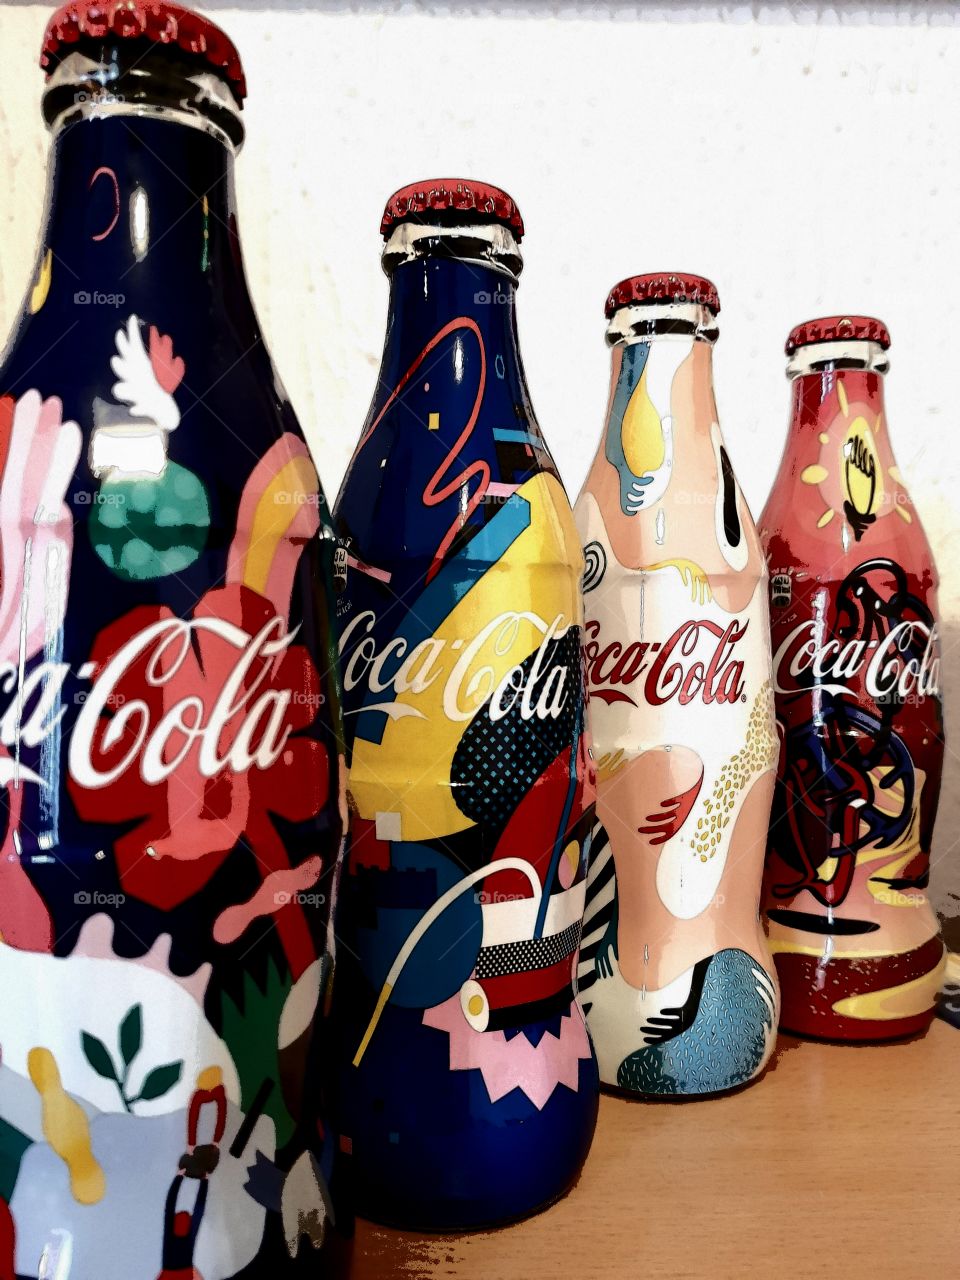 Coca-Cola limited edition